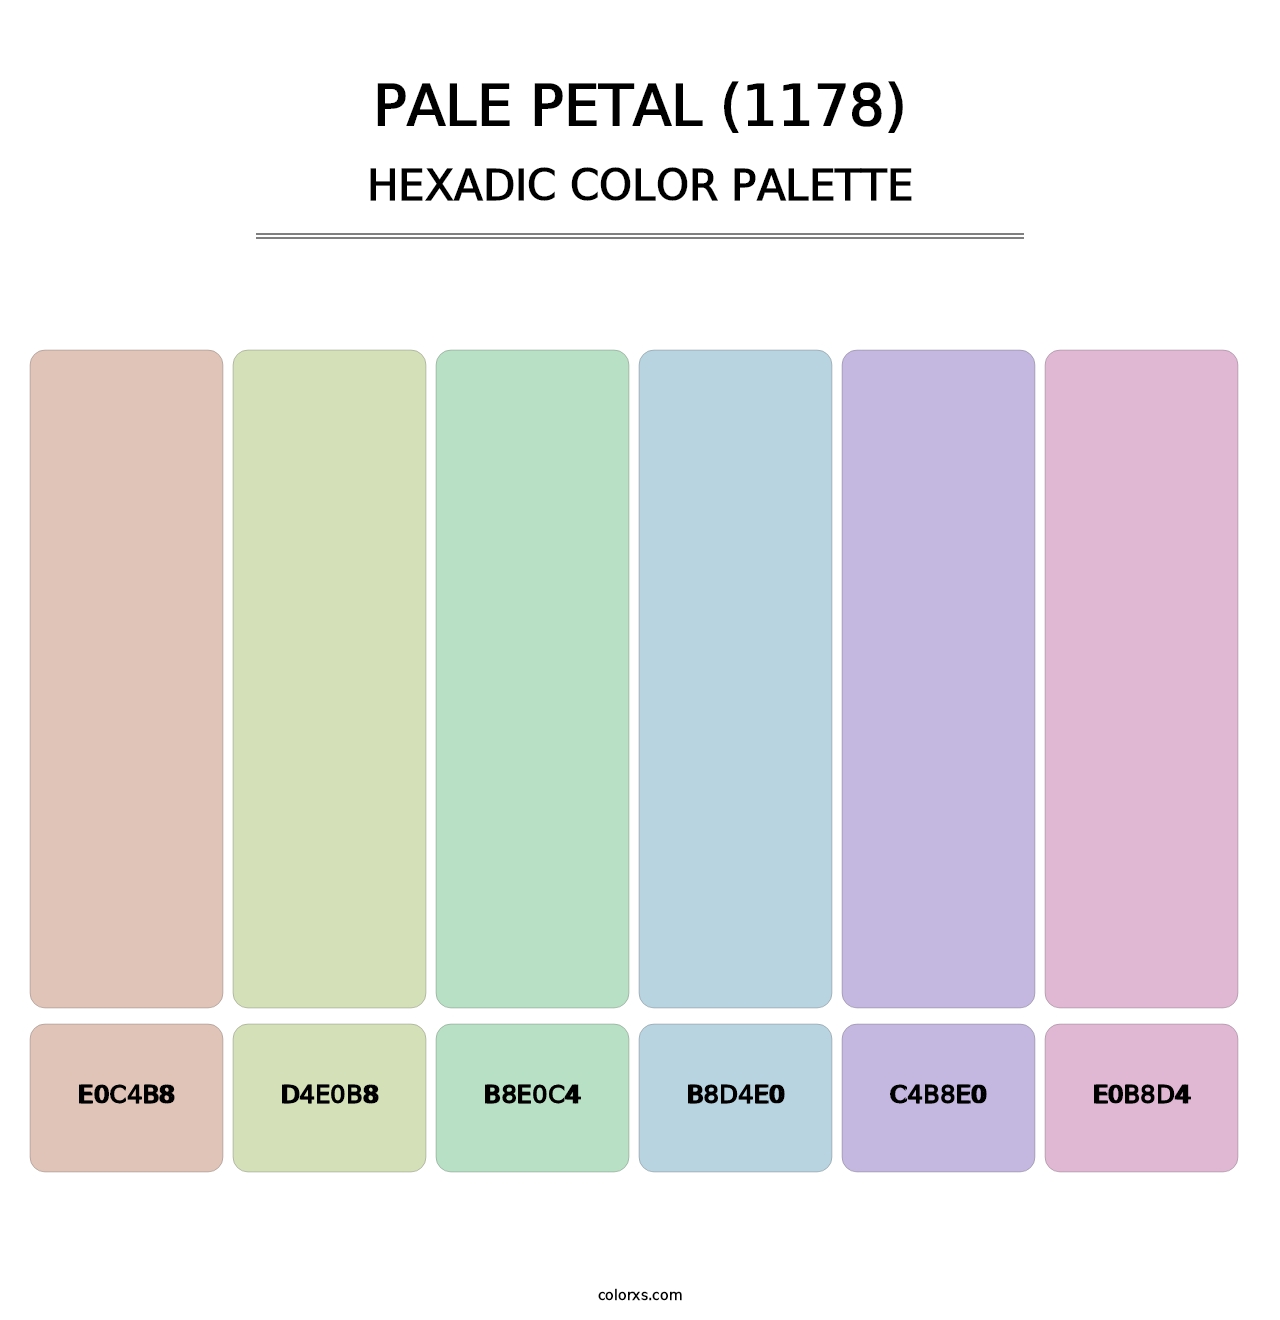 Pale Petal (1178) - Hexadic Color Palette